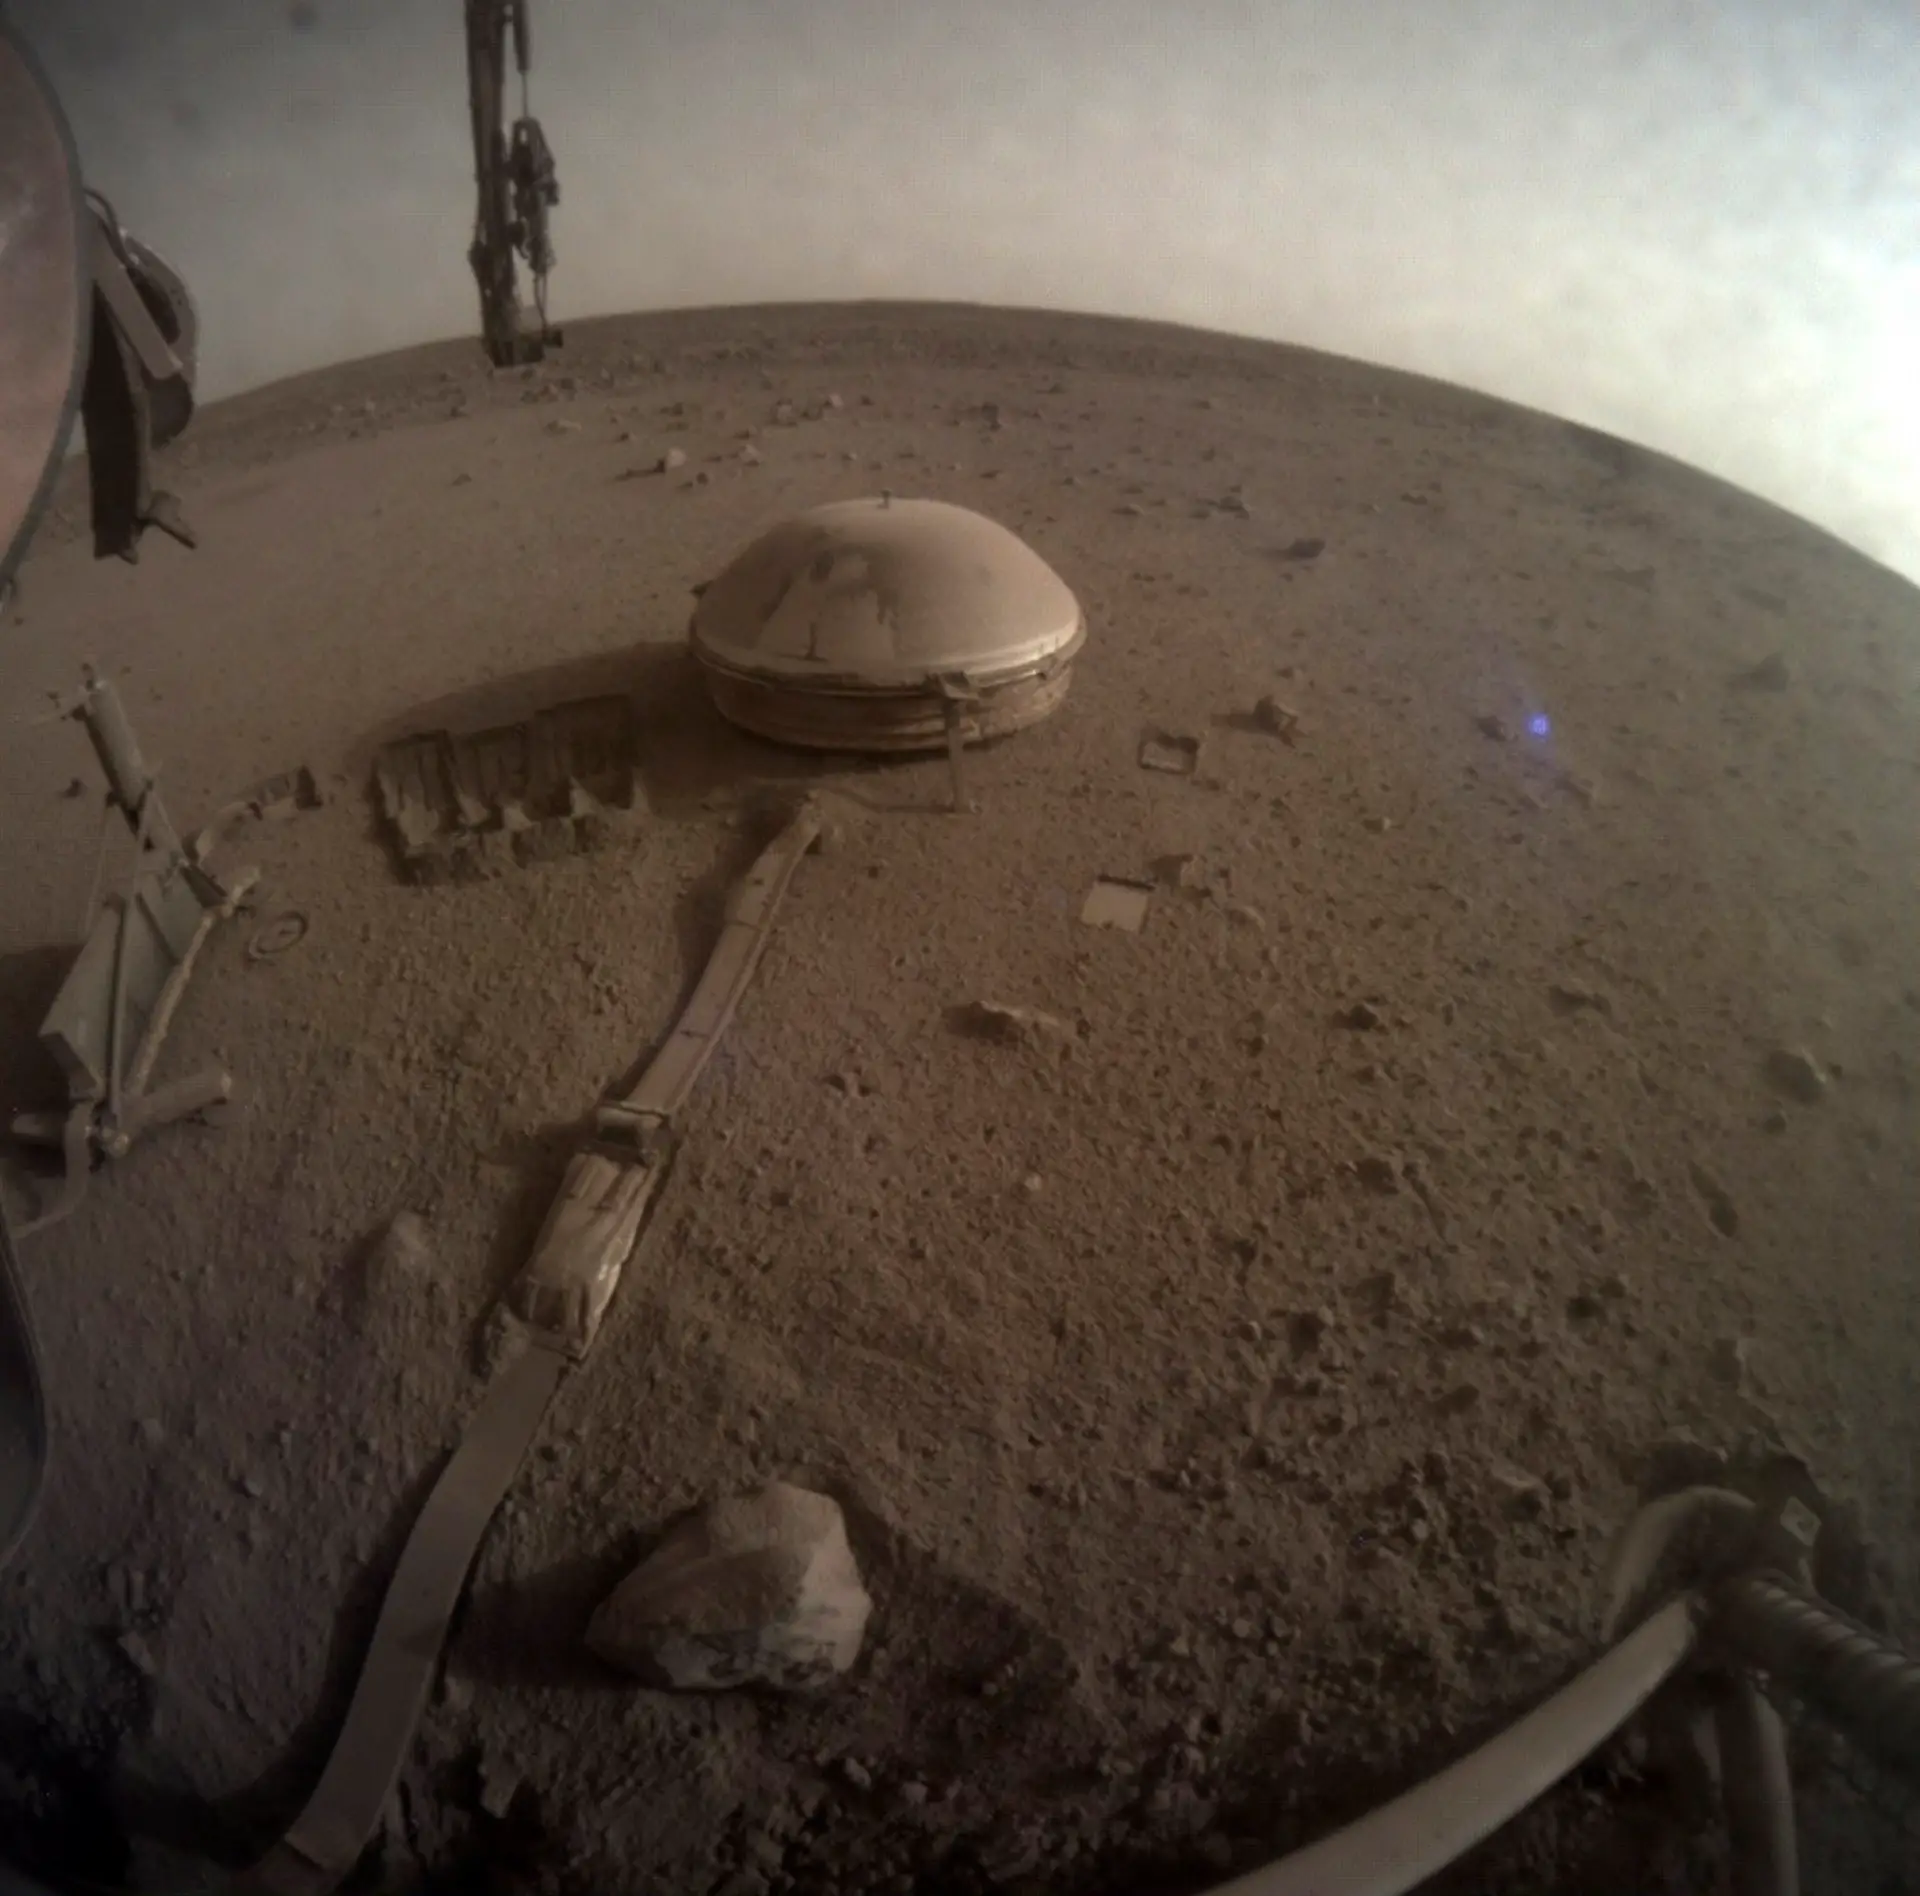 Sonda espacial InSight está a "morrer" em Marte onde pousou há quatro anos